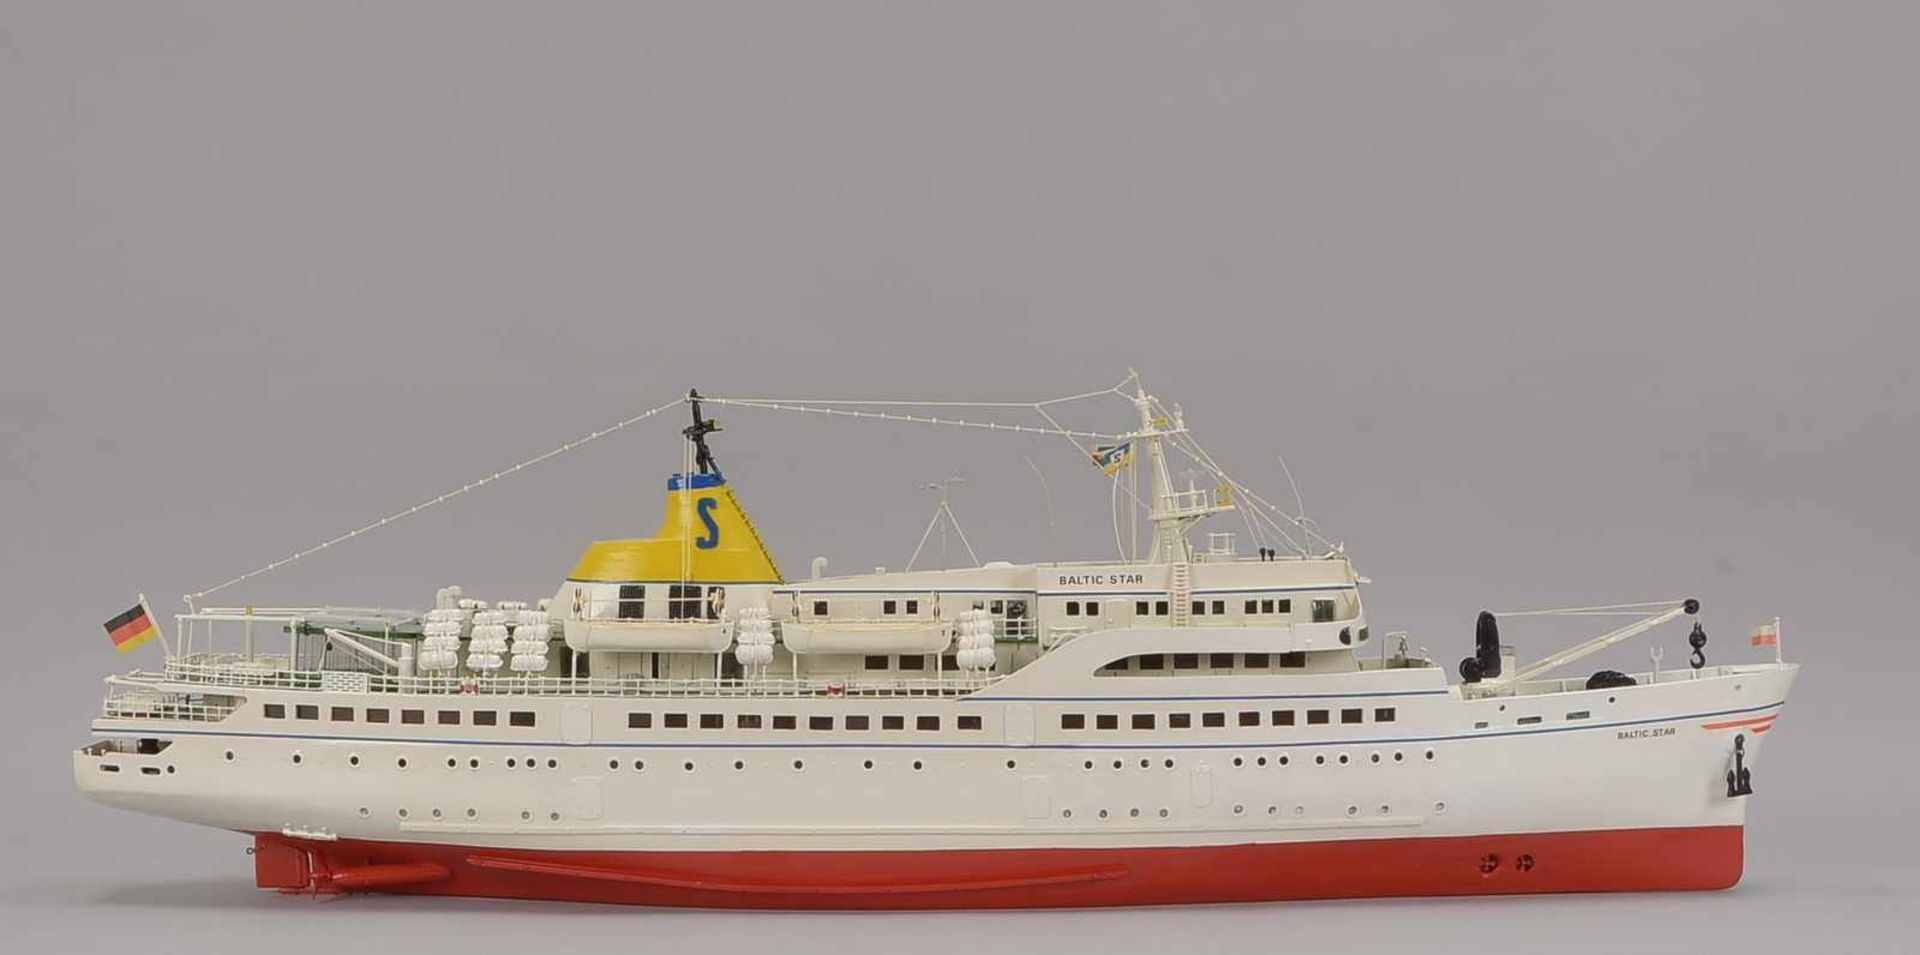 Schiffsmodell, Holz, 'Baltic Star', Maßstab 1:100 (maßstabsgerechter detailreicher Nachbau des